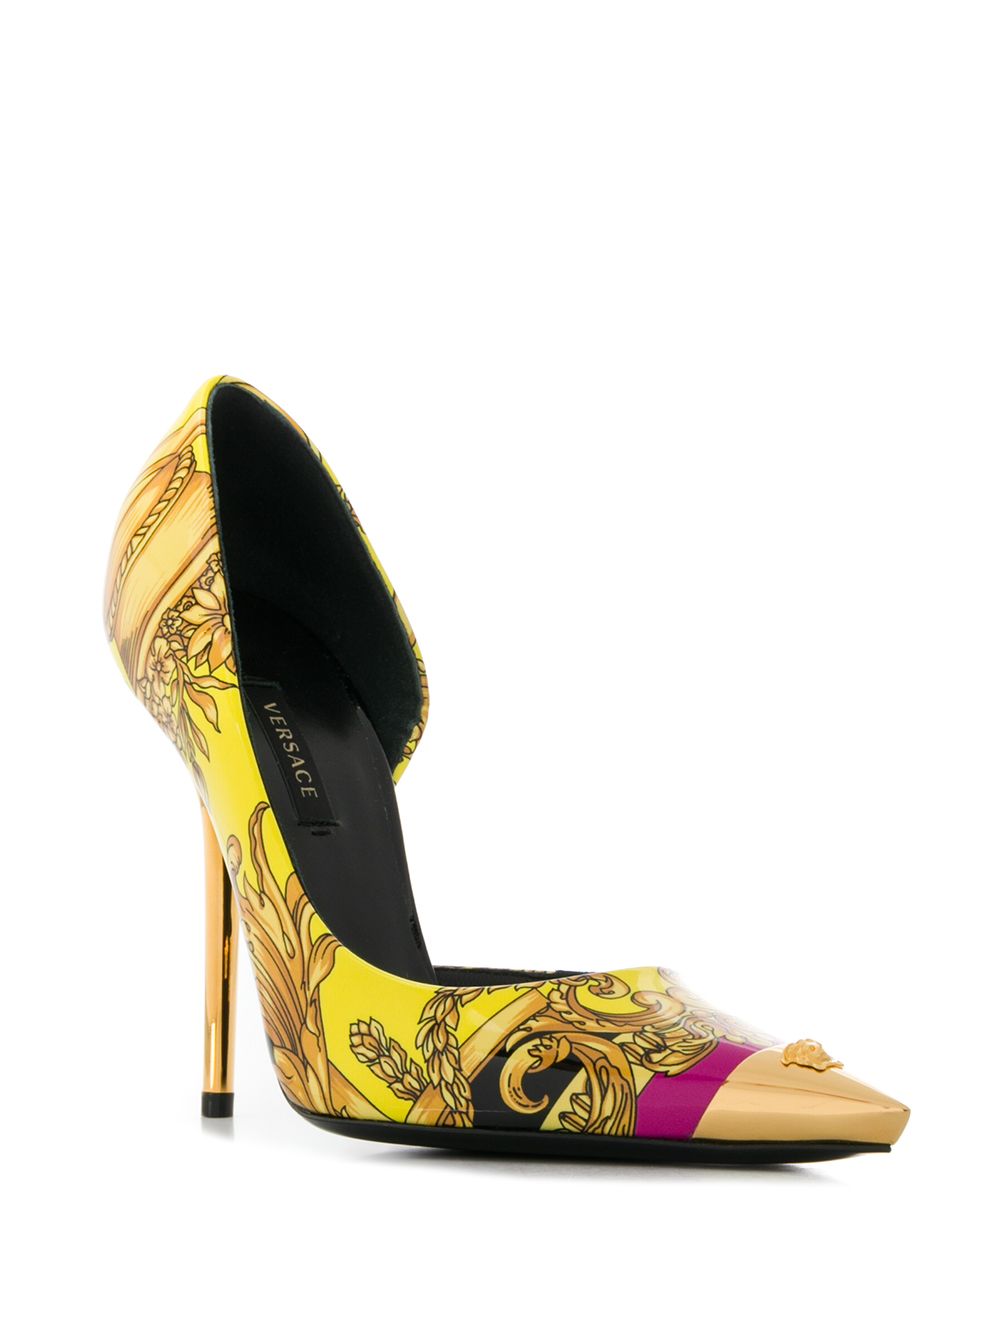 фото Versace туфли-лодочки с заостренным носком и принтом Baroque